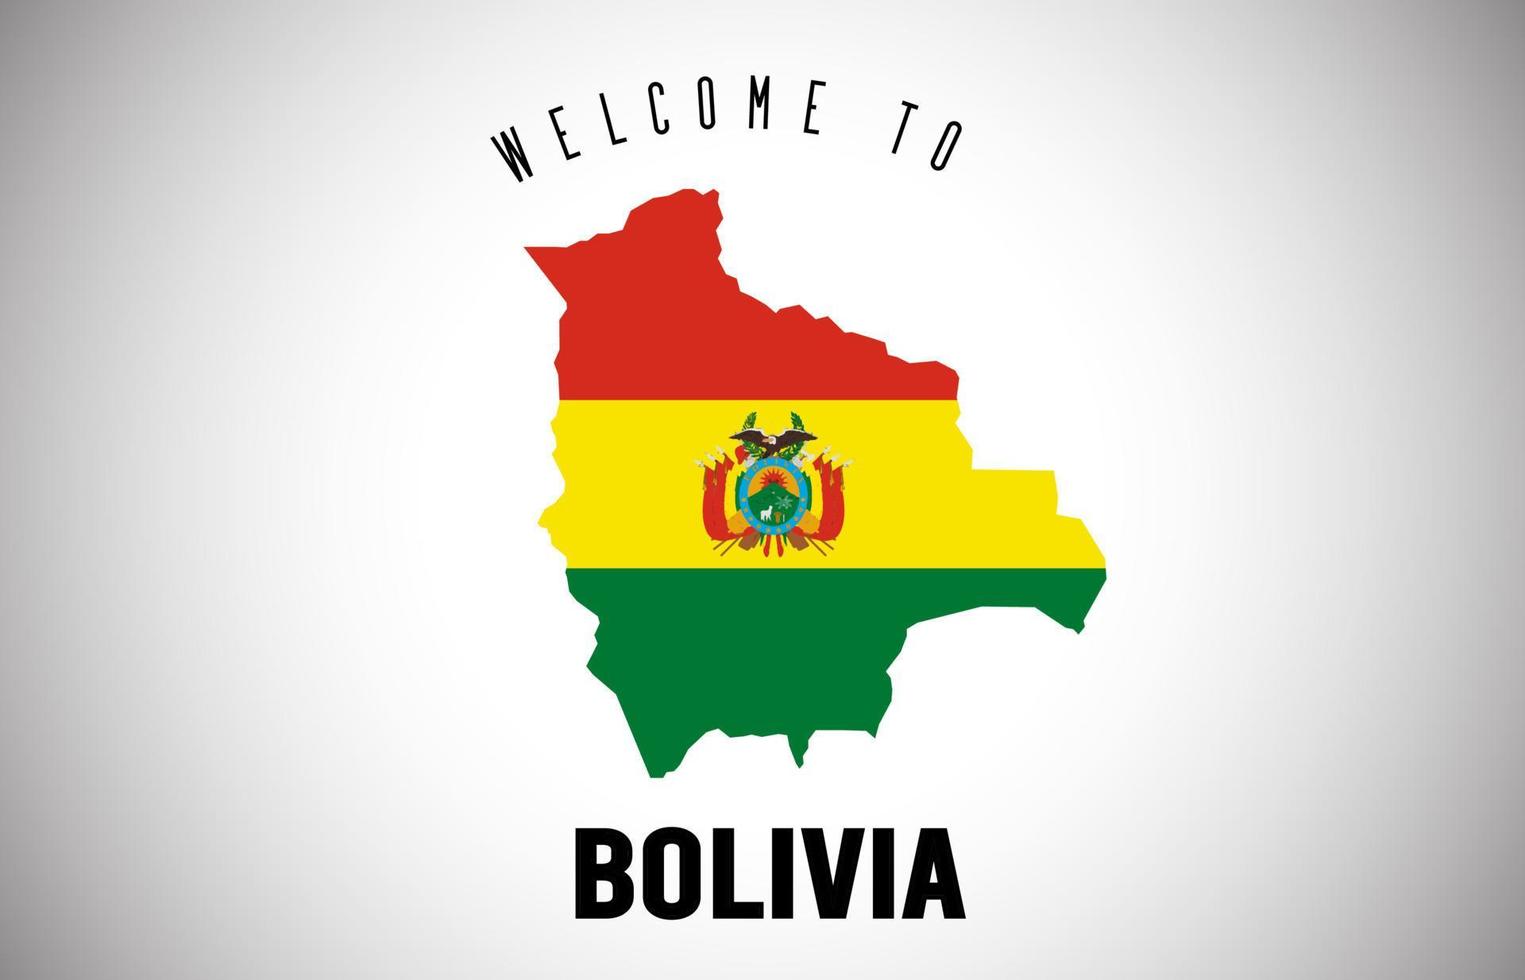 bolivia välkommen till text och landsflagga inuti landsgränskarta vektordesign. vektor